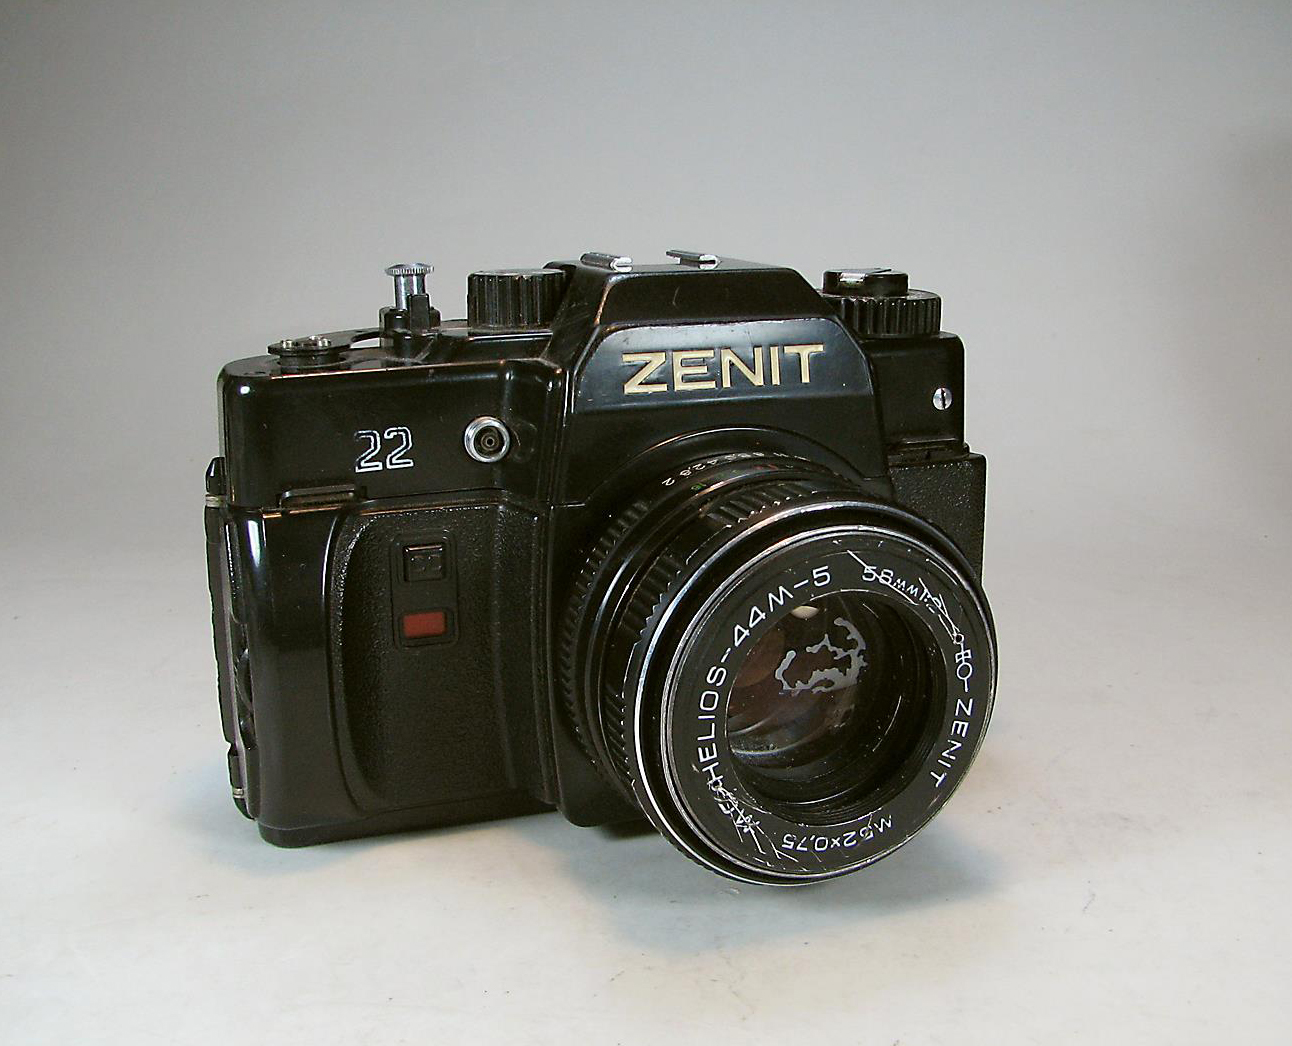 دوربین زنیت Zenit 122 همراه با کیف